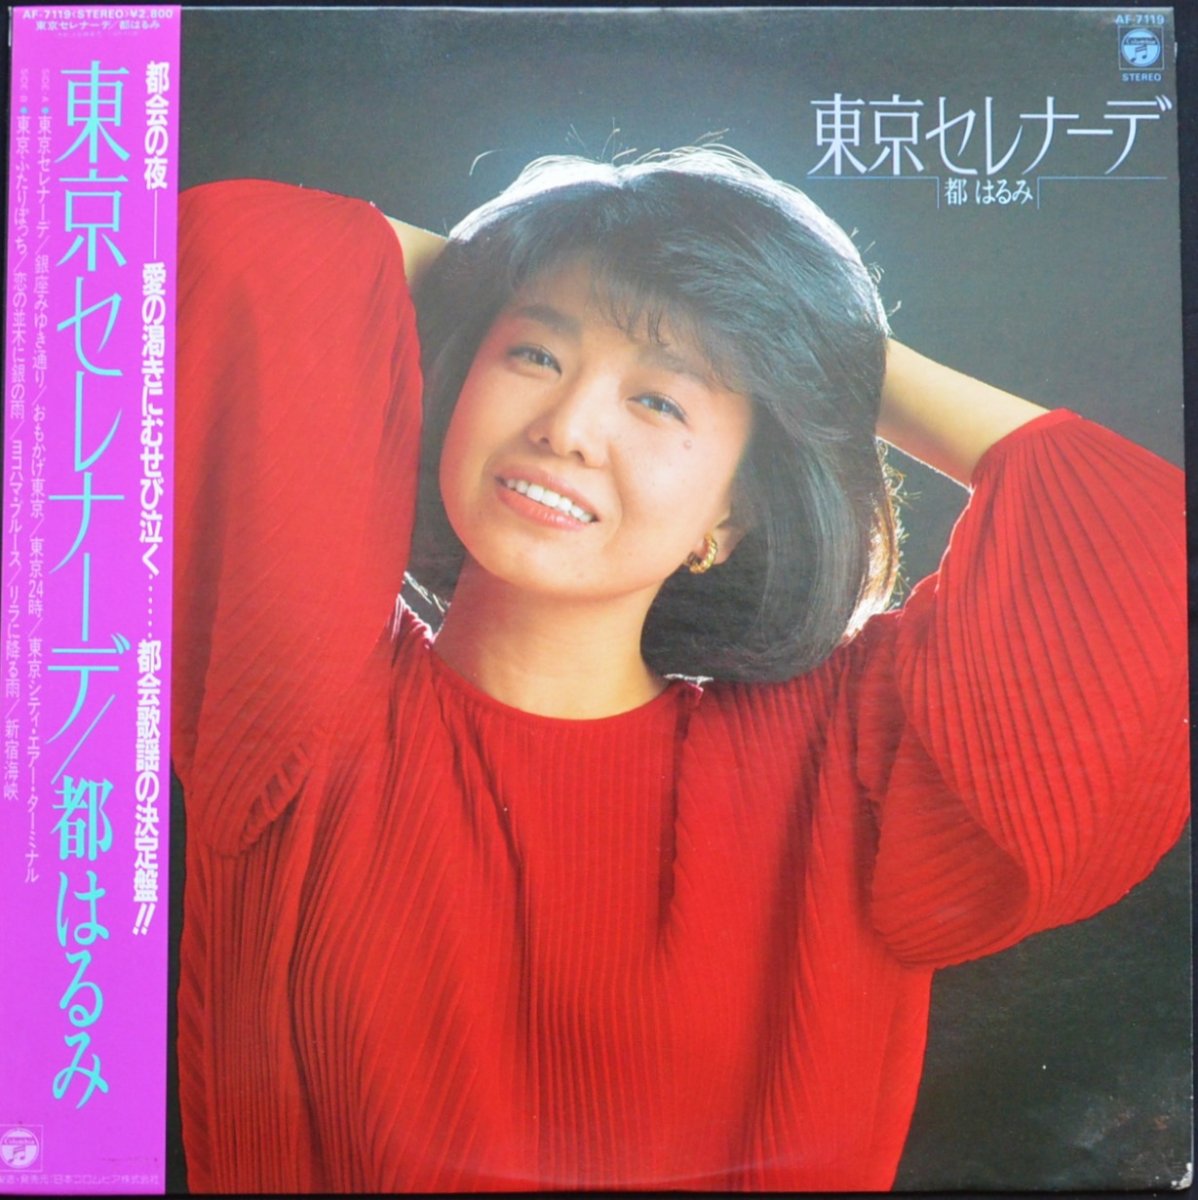 都はるみ HARUMI MIYAKO / 東京セレナーデ (LP) - HIP TANK RECORDS